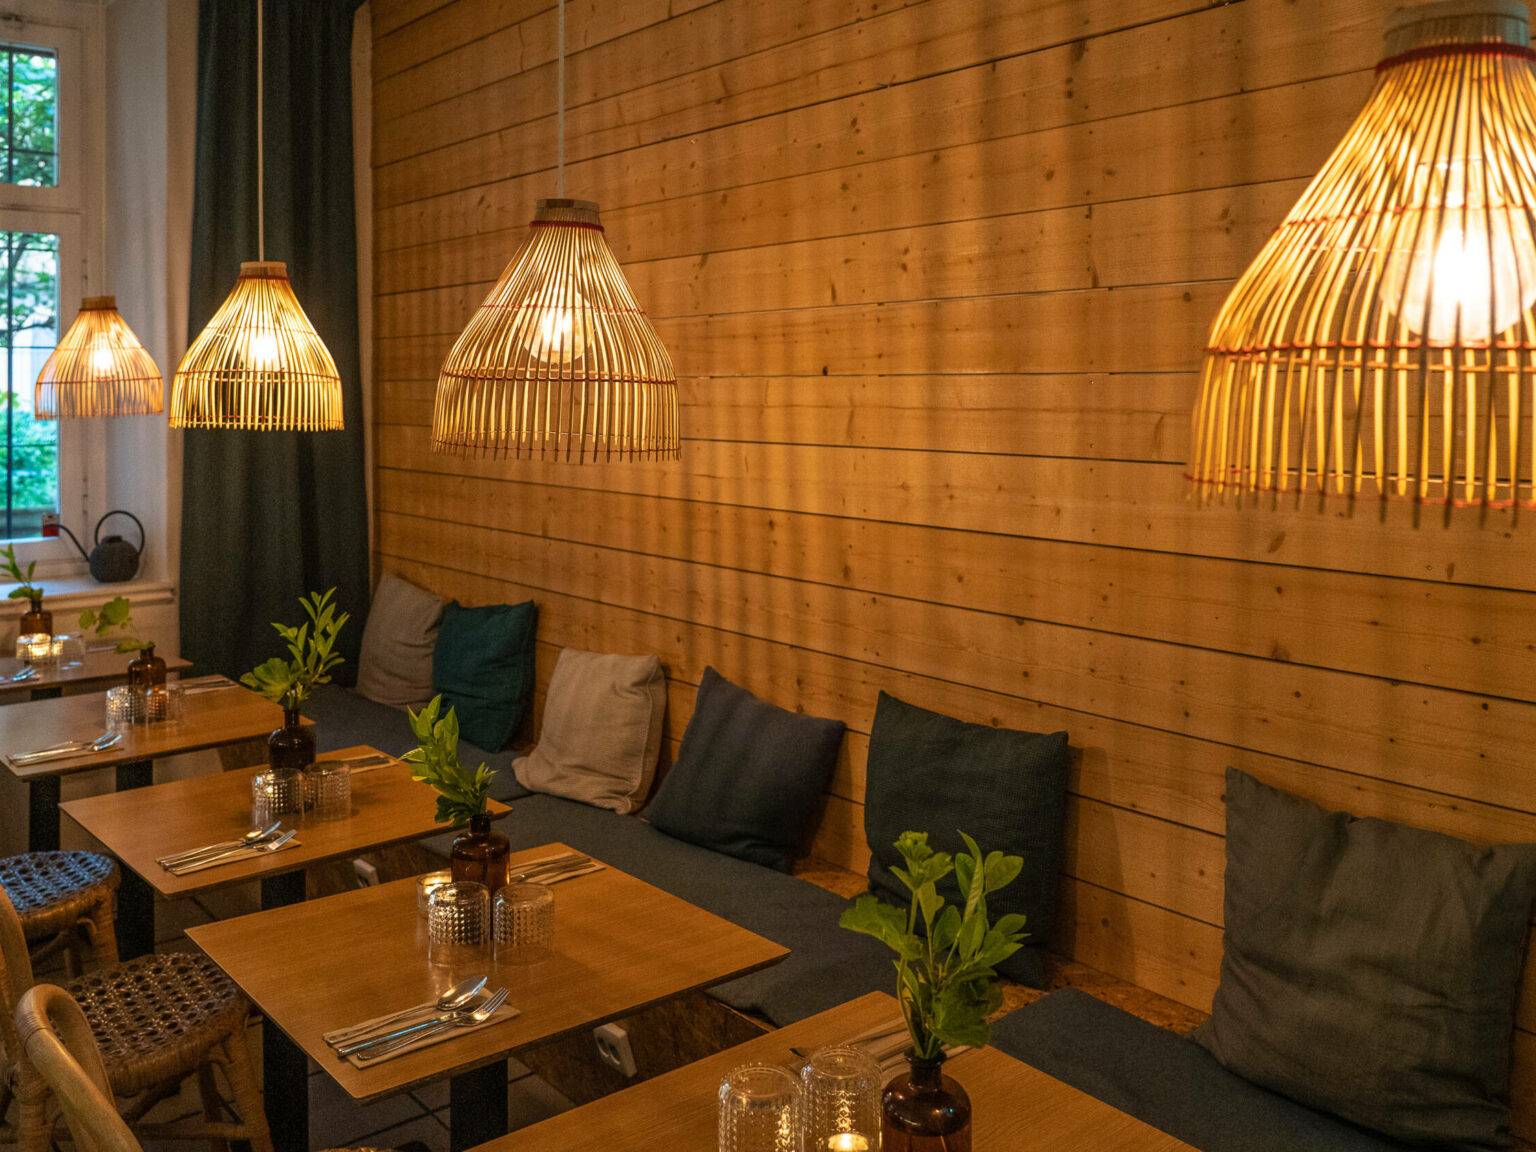 Ein Restaurant Geheimtipp mit Bali-Vibes und Urlaubsfeelings mit viel Holz und Bambus ist das Warung in Hornstull..